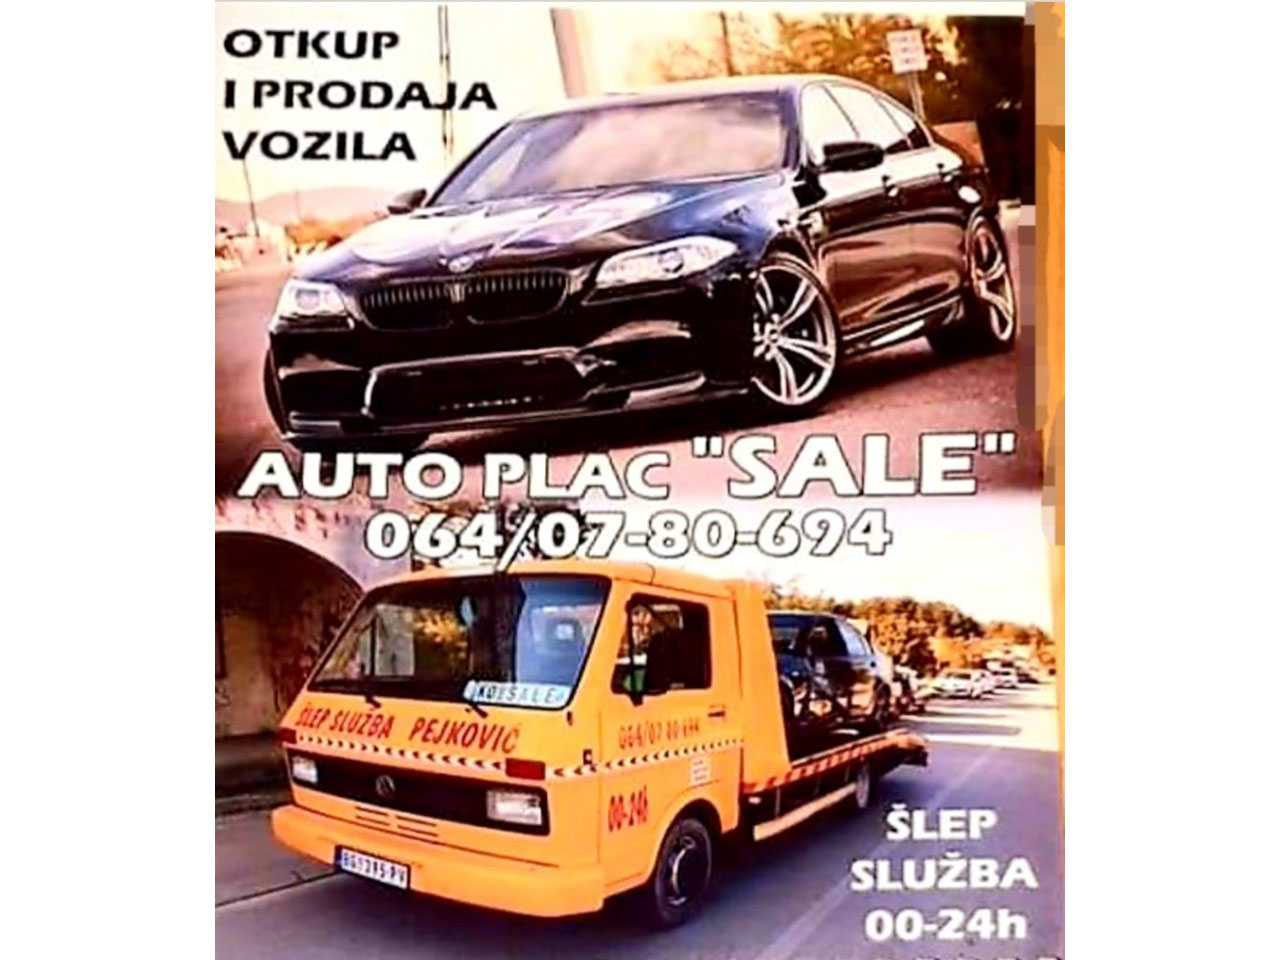 Slika 4 - OTKUP AUTOMOBILA SALE - Auto placevi, Kovin